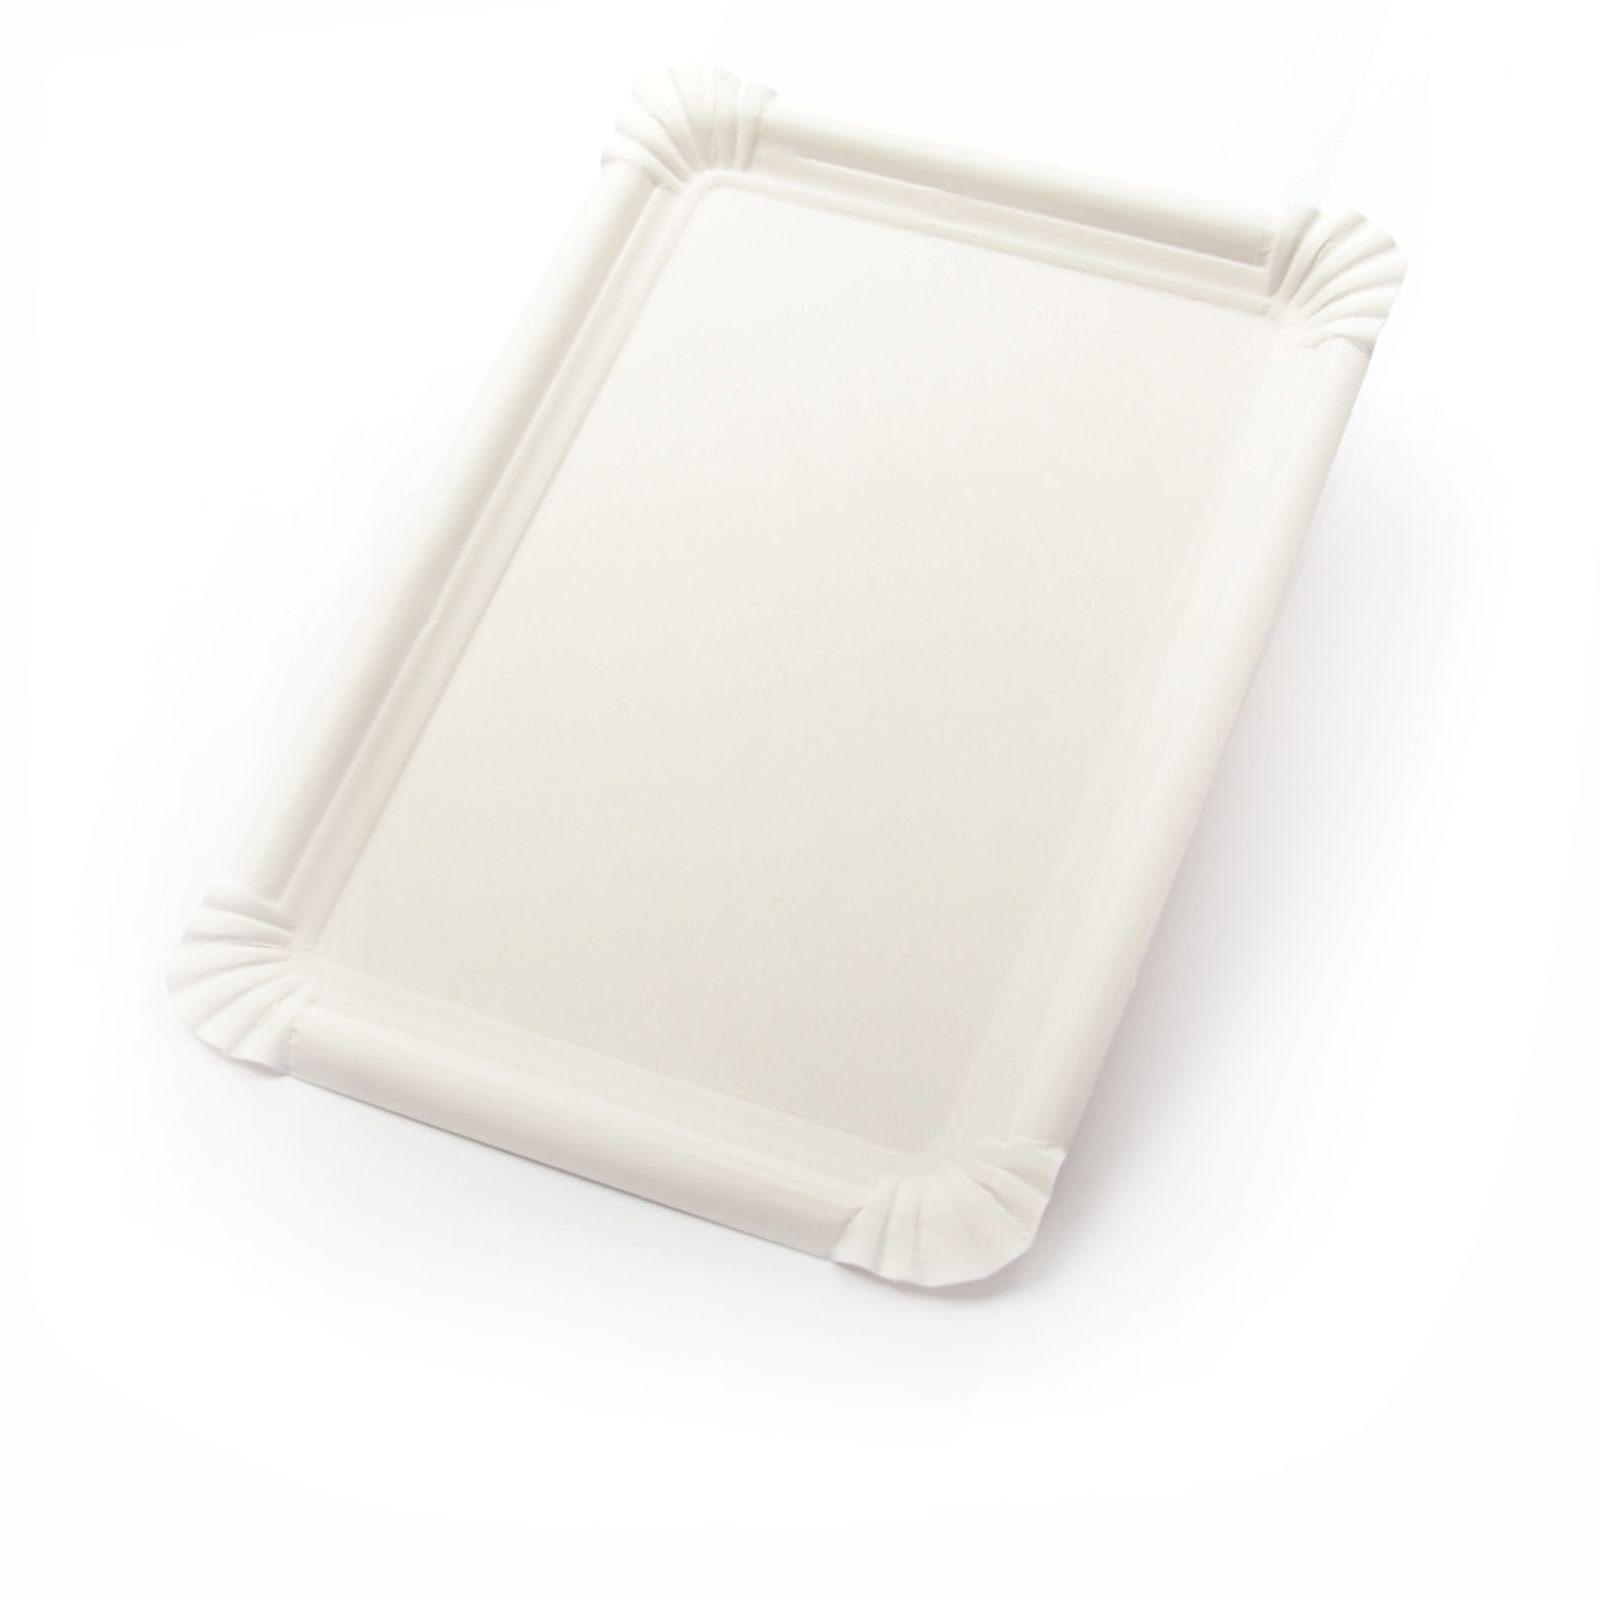 Einwegteller 1000 Stück Pappteller Kuchenunterleger Imbissteller weiß, Tortenteller Frischfaser Kuchenteller Beschichtung, rechteckig cm), ohne (18×26